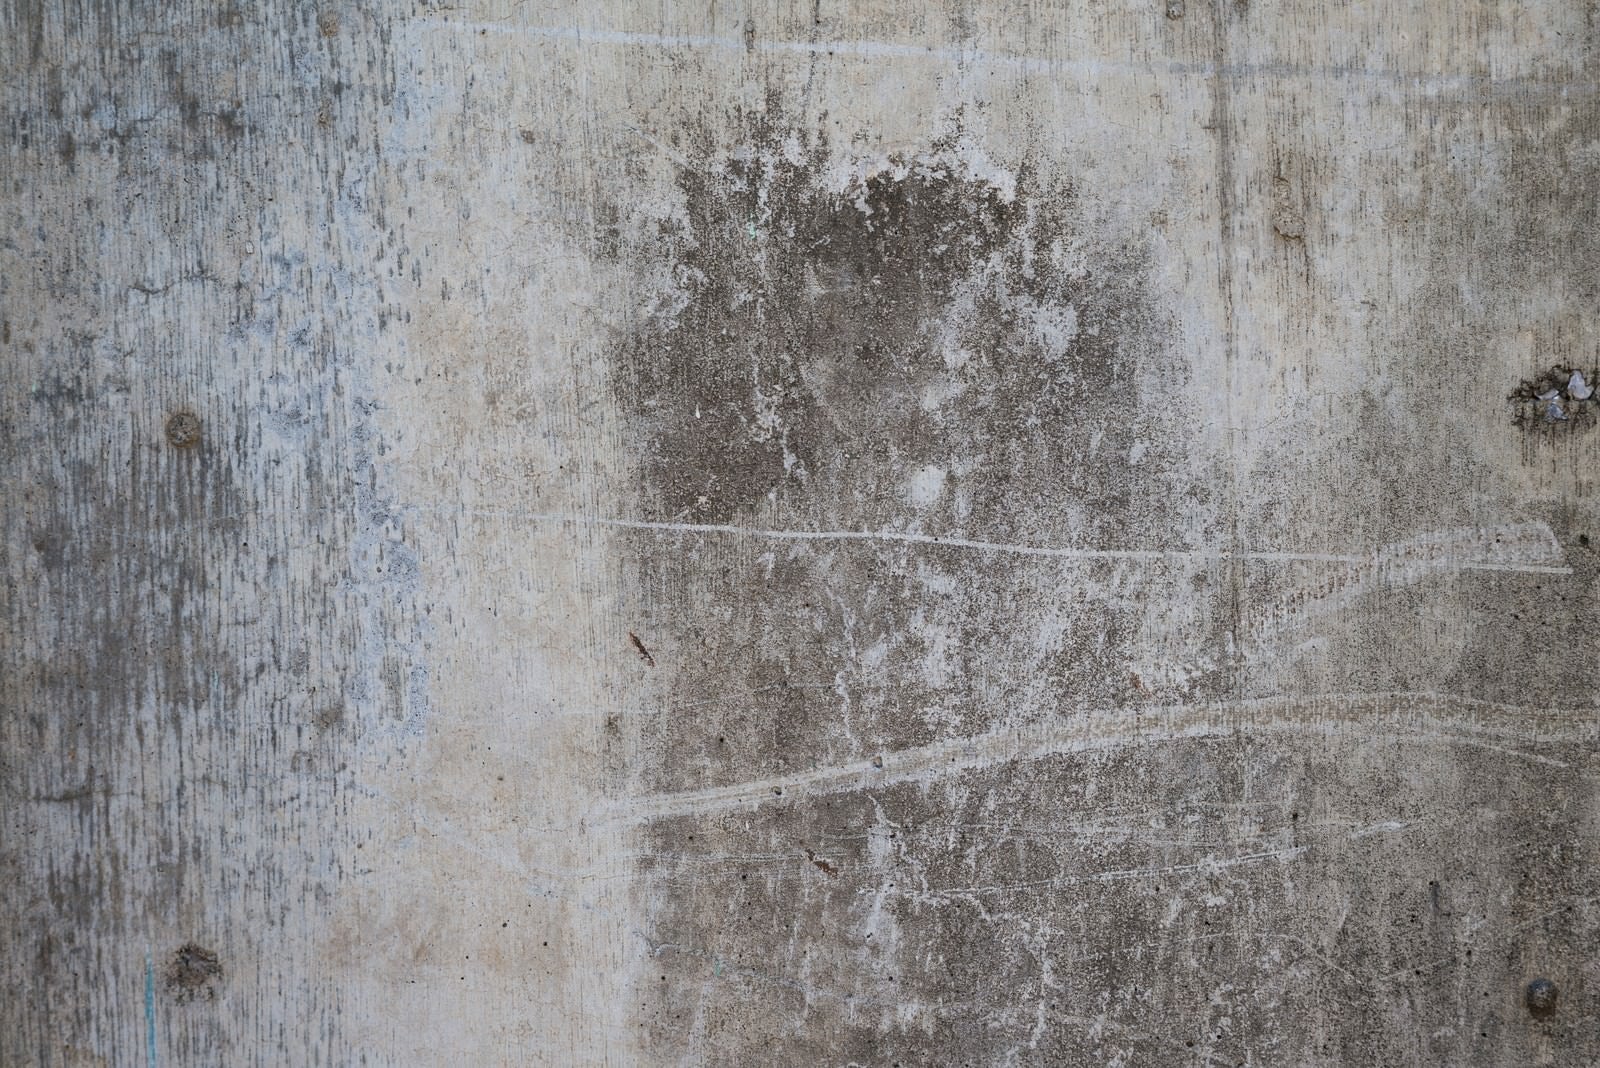 「汚れとシミがついたコンクリートの壁」の写真